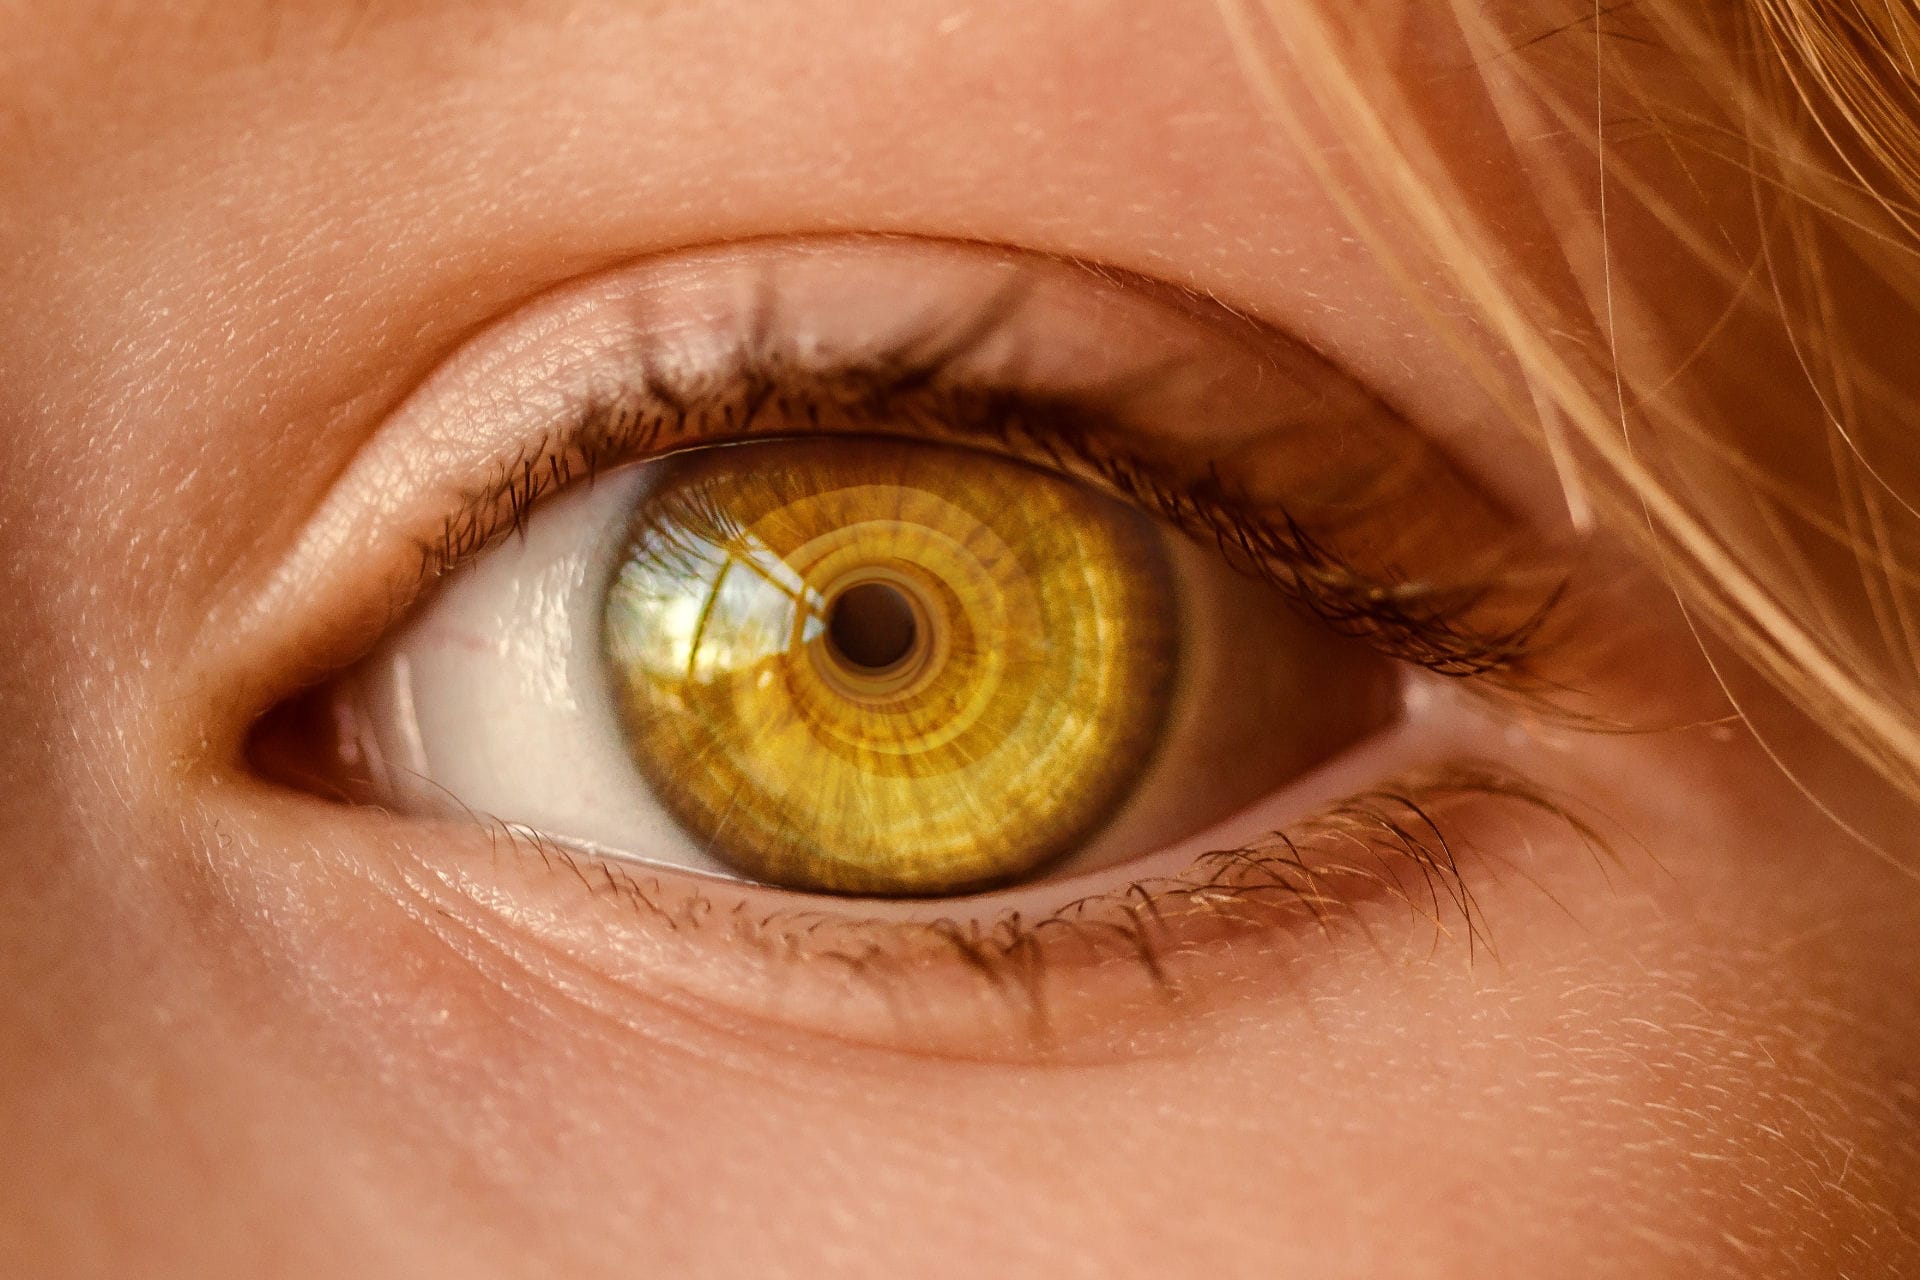 Großaufnahme eines Auges, bei dem sich in der gelben Iris eine Spirale spiegelt